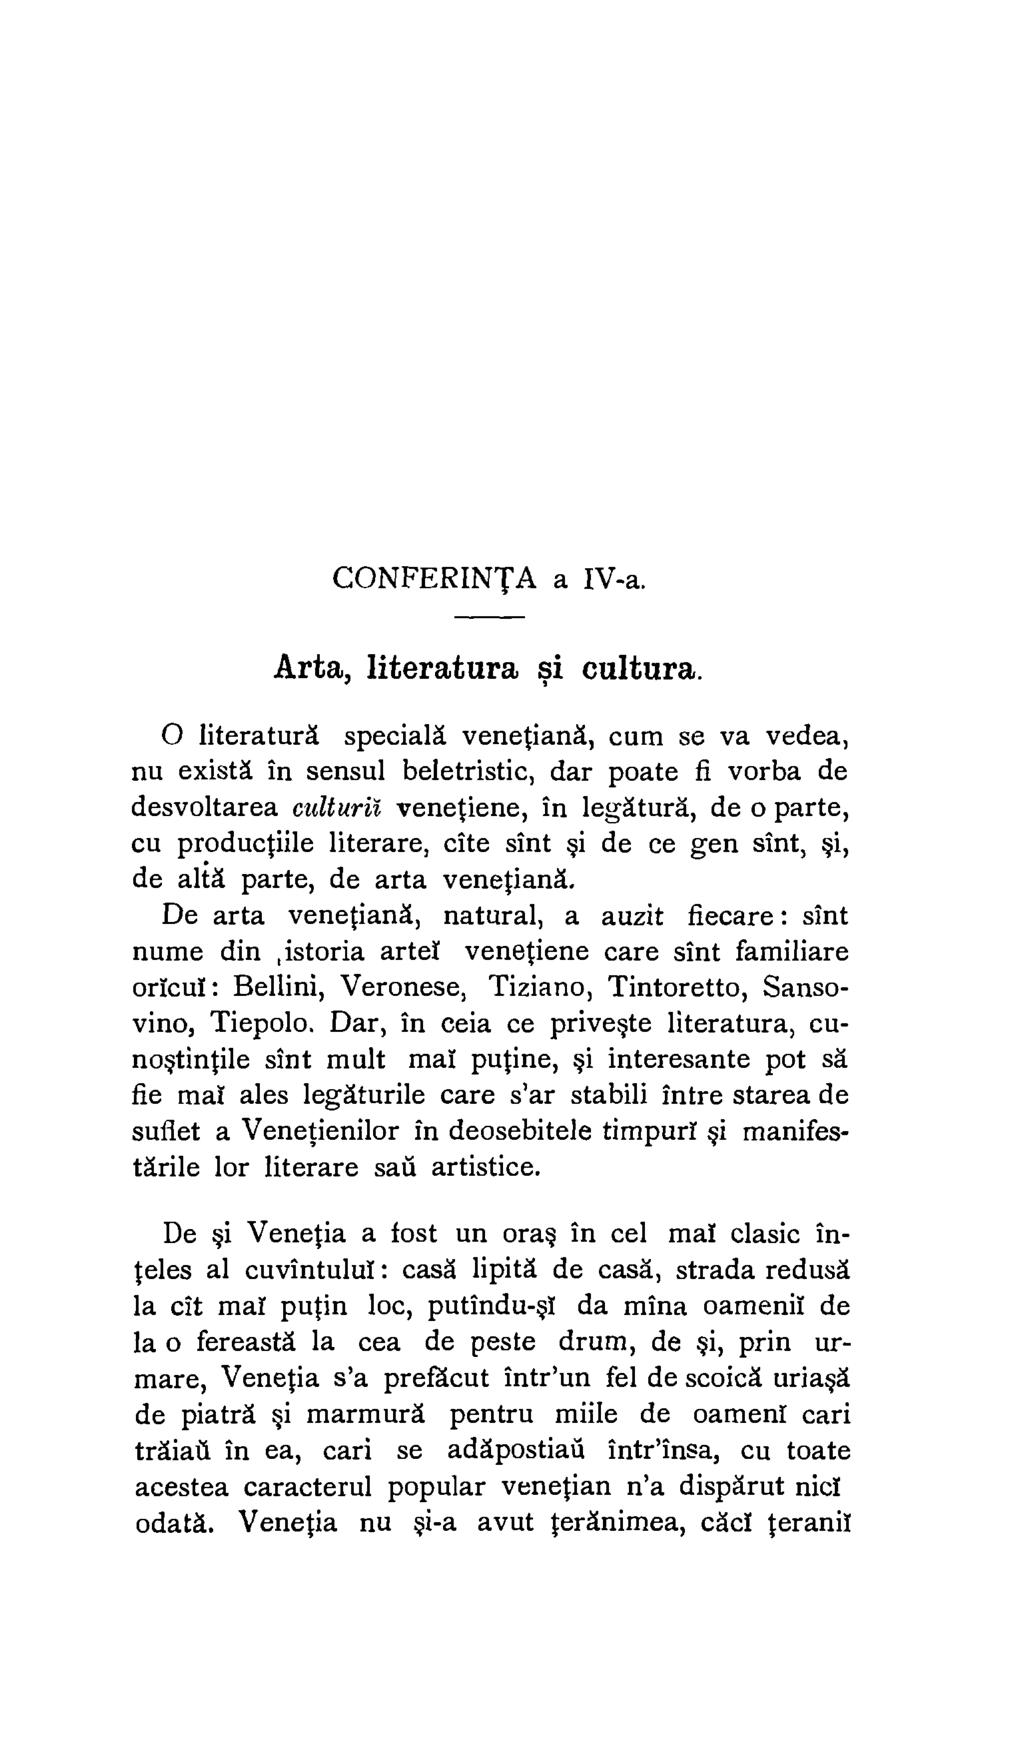 CONFERINTA a IV-a. Arta, literatura si cultura.